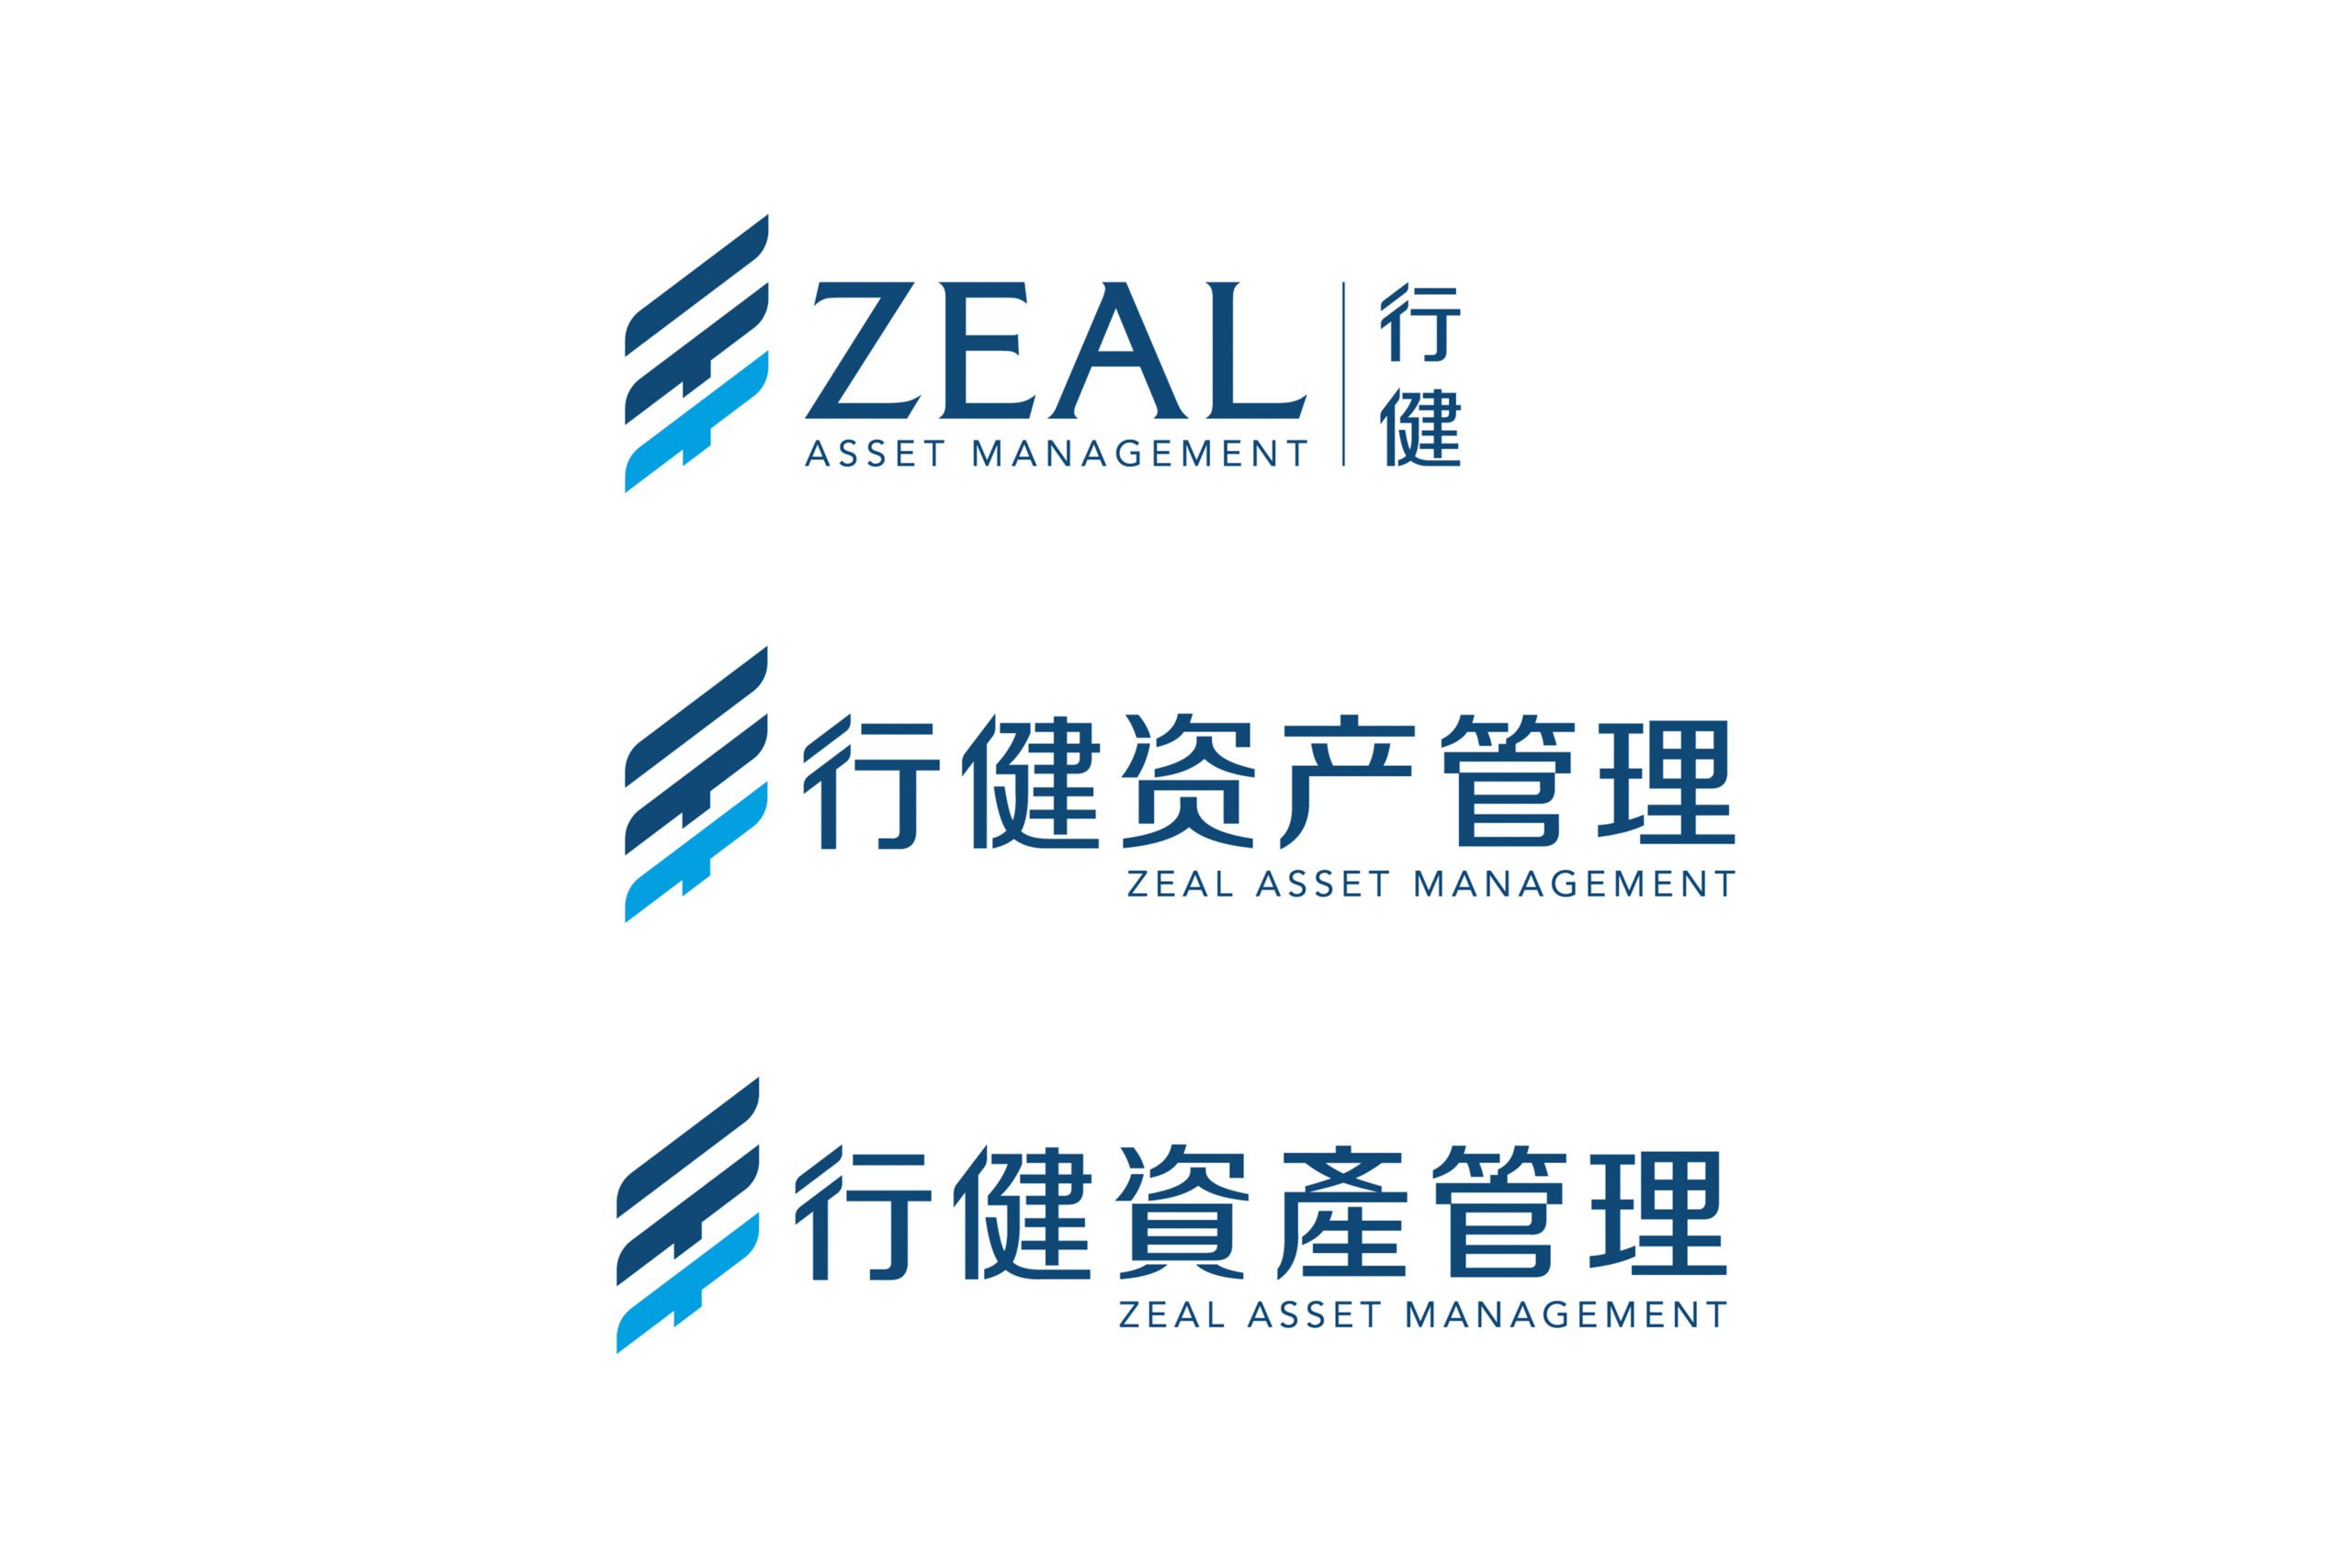 Zeal Asset Management Logo Identity